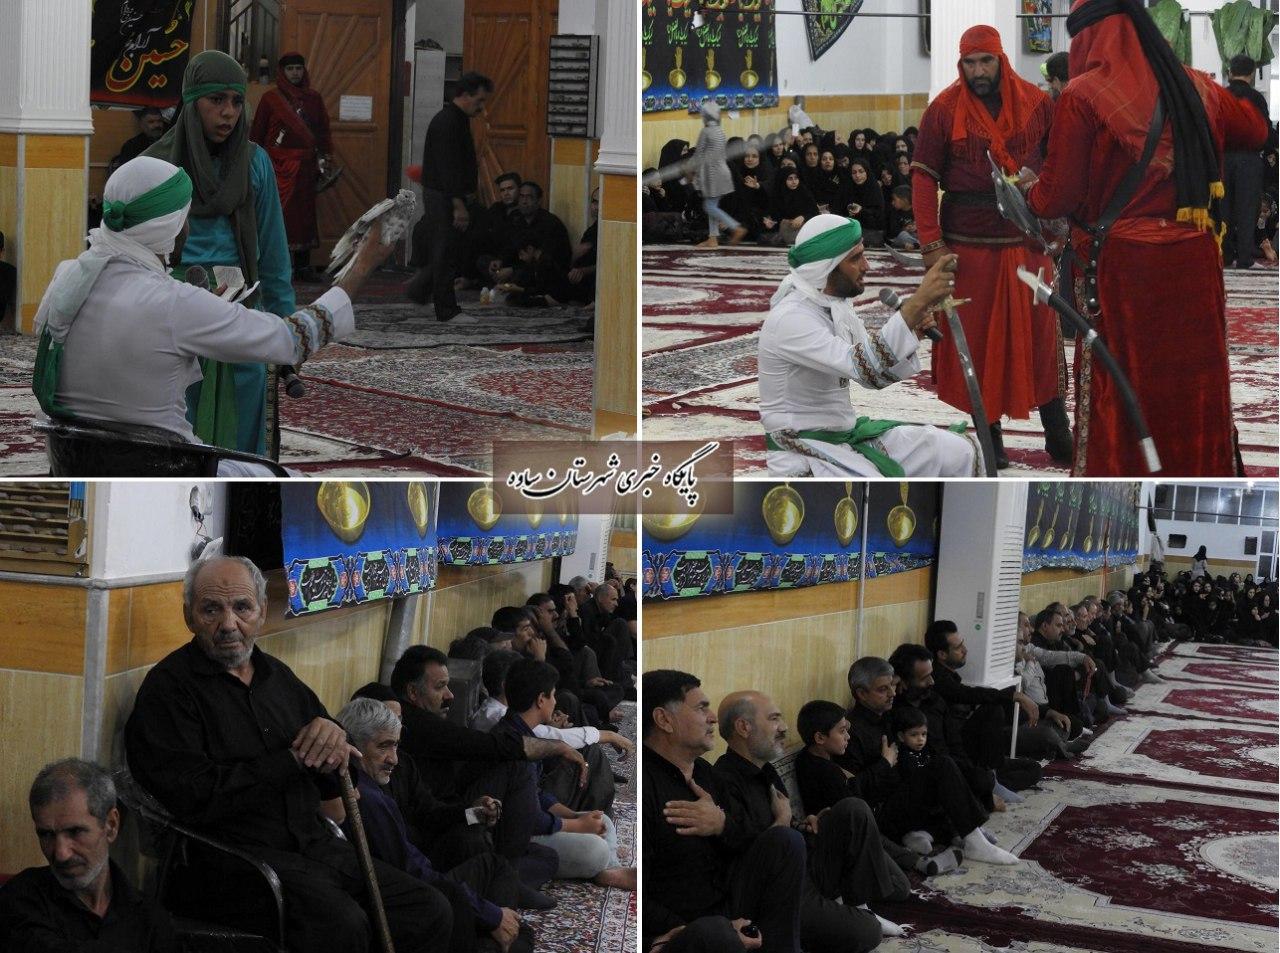 برگزاری مراسم شب تاسوعای حسینی در حسینیه غازم آبادی های مقیم ساوه با اجرای تعزیه و توزیع غذای تبرکی. الناز33